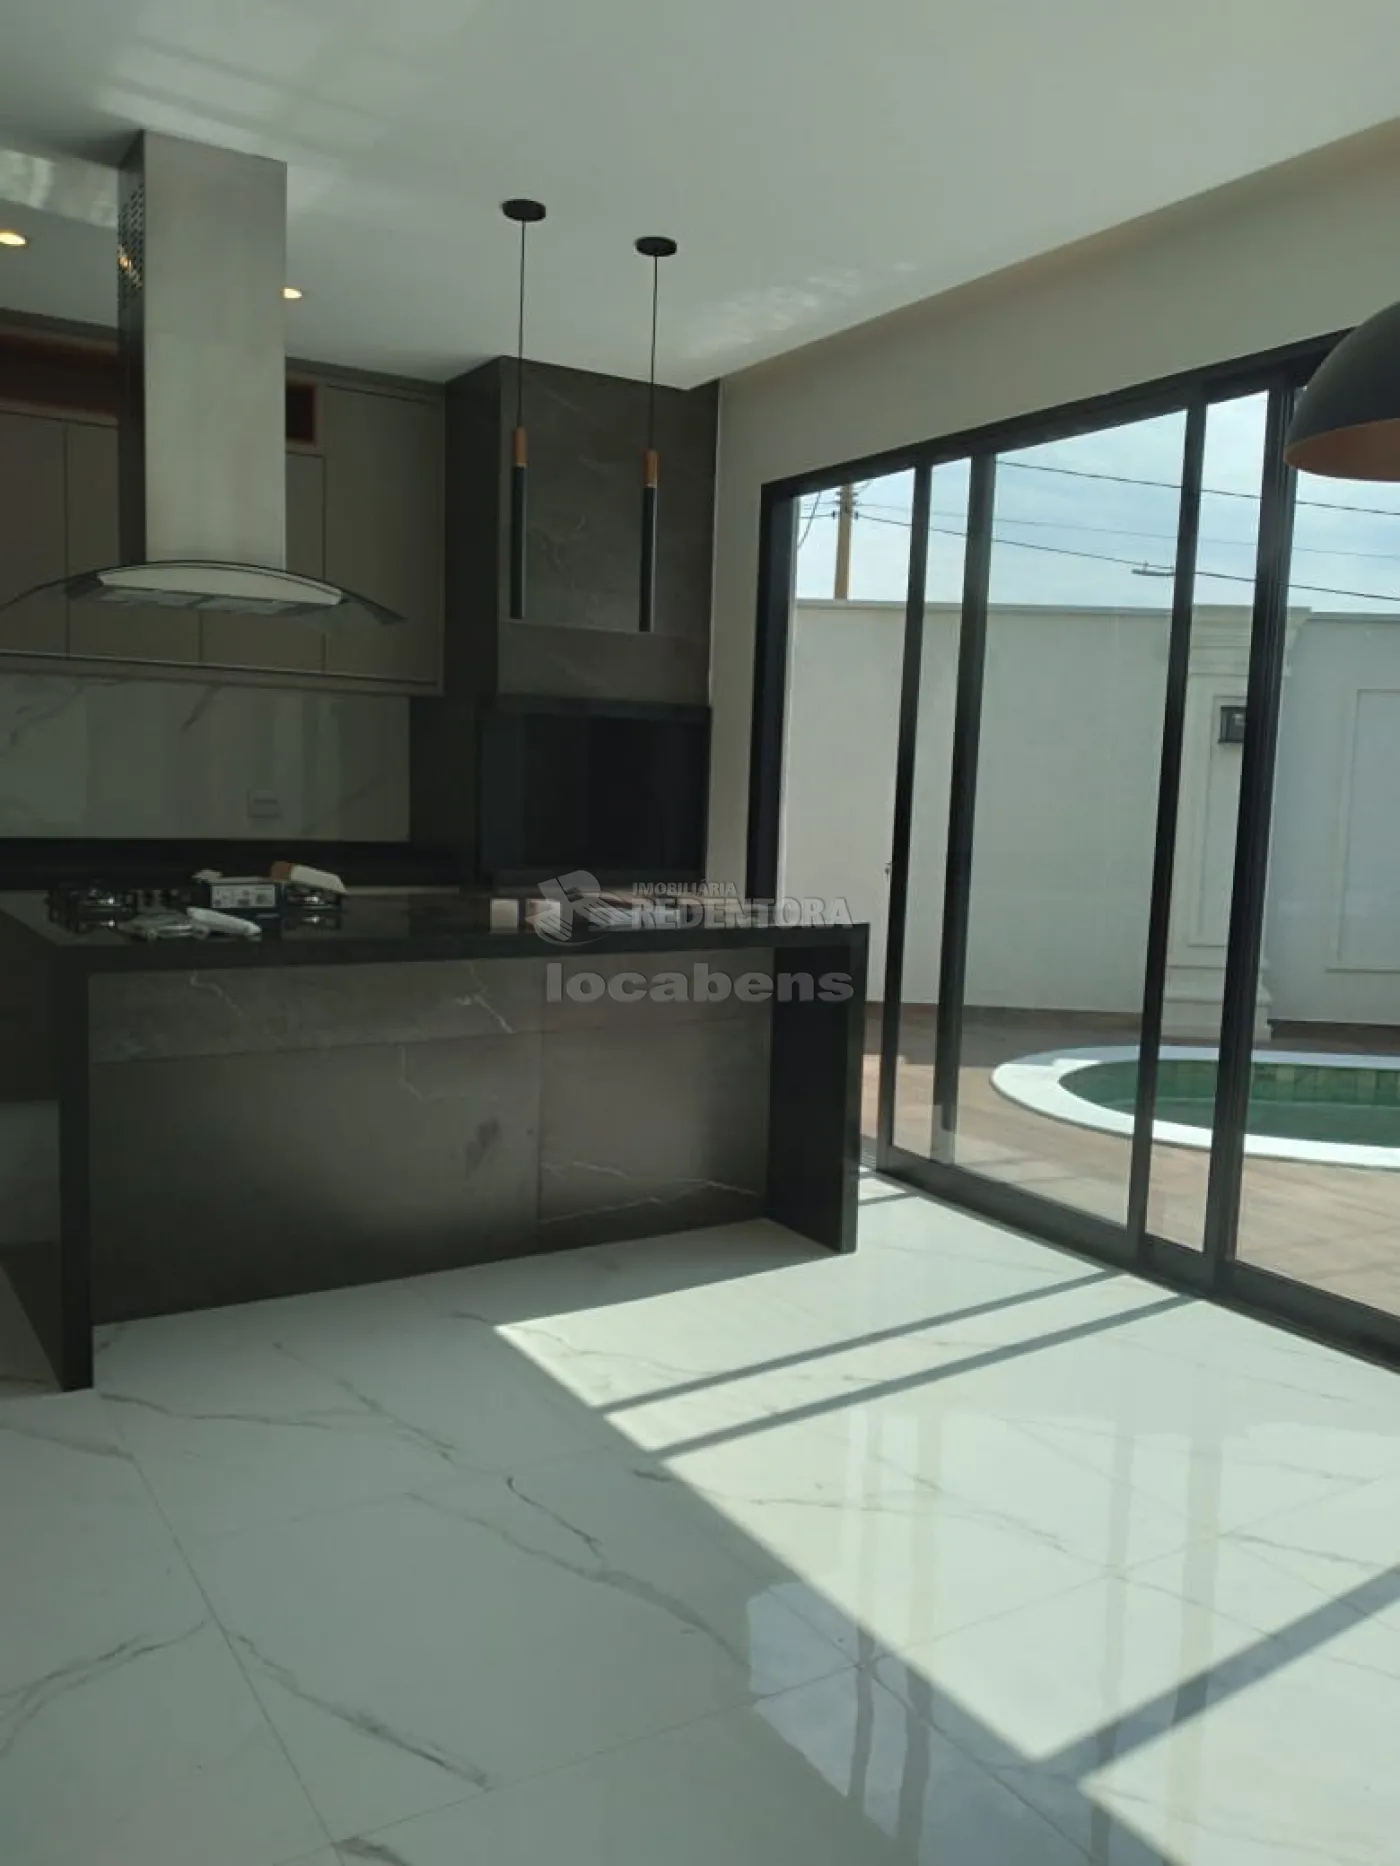 Comprar Casa / Condomínio em Mirassol apenas R$ 1.620.000,00 - Foto 14